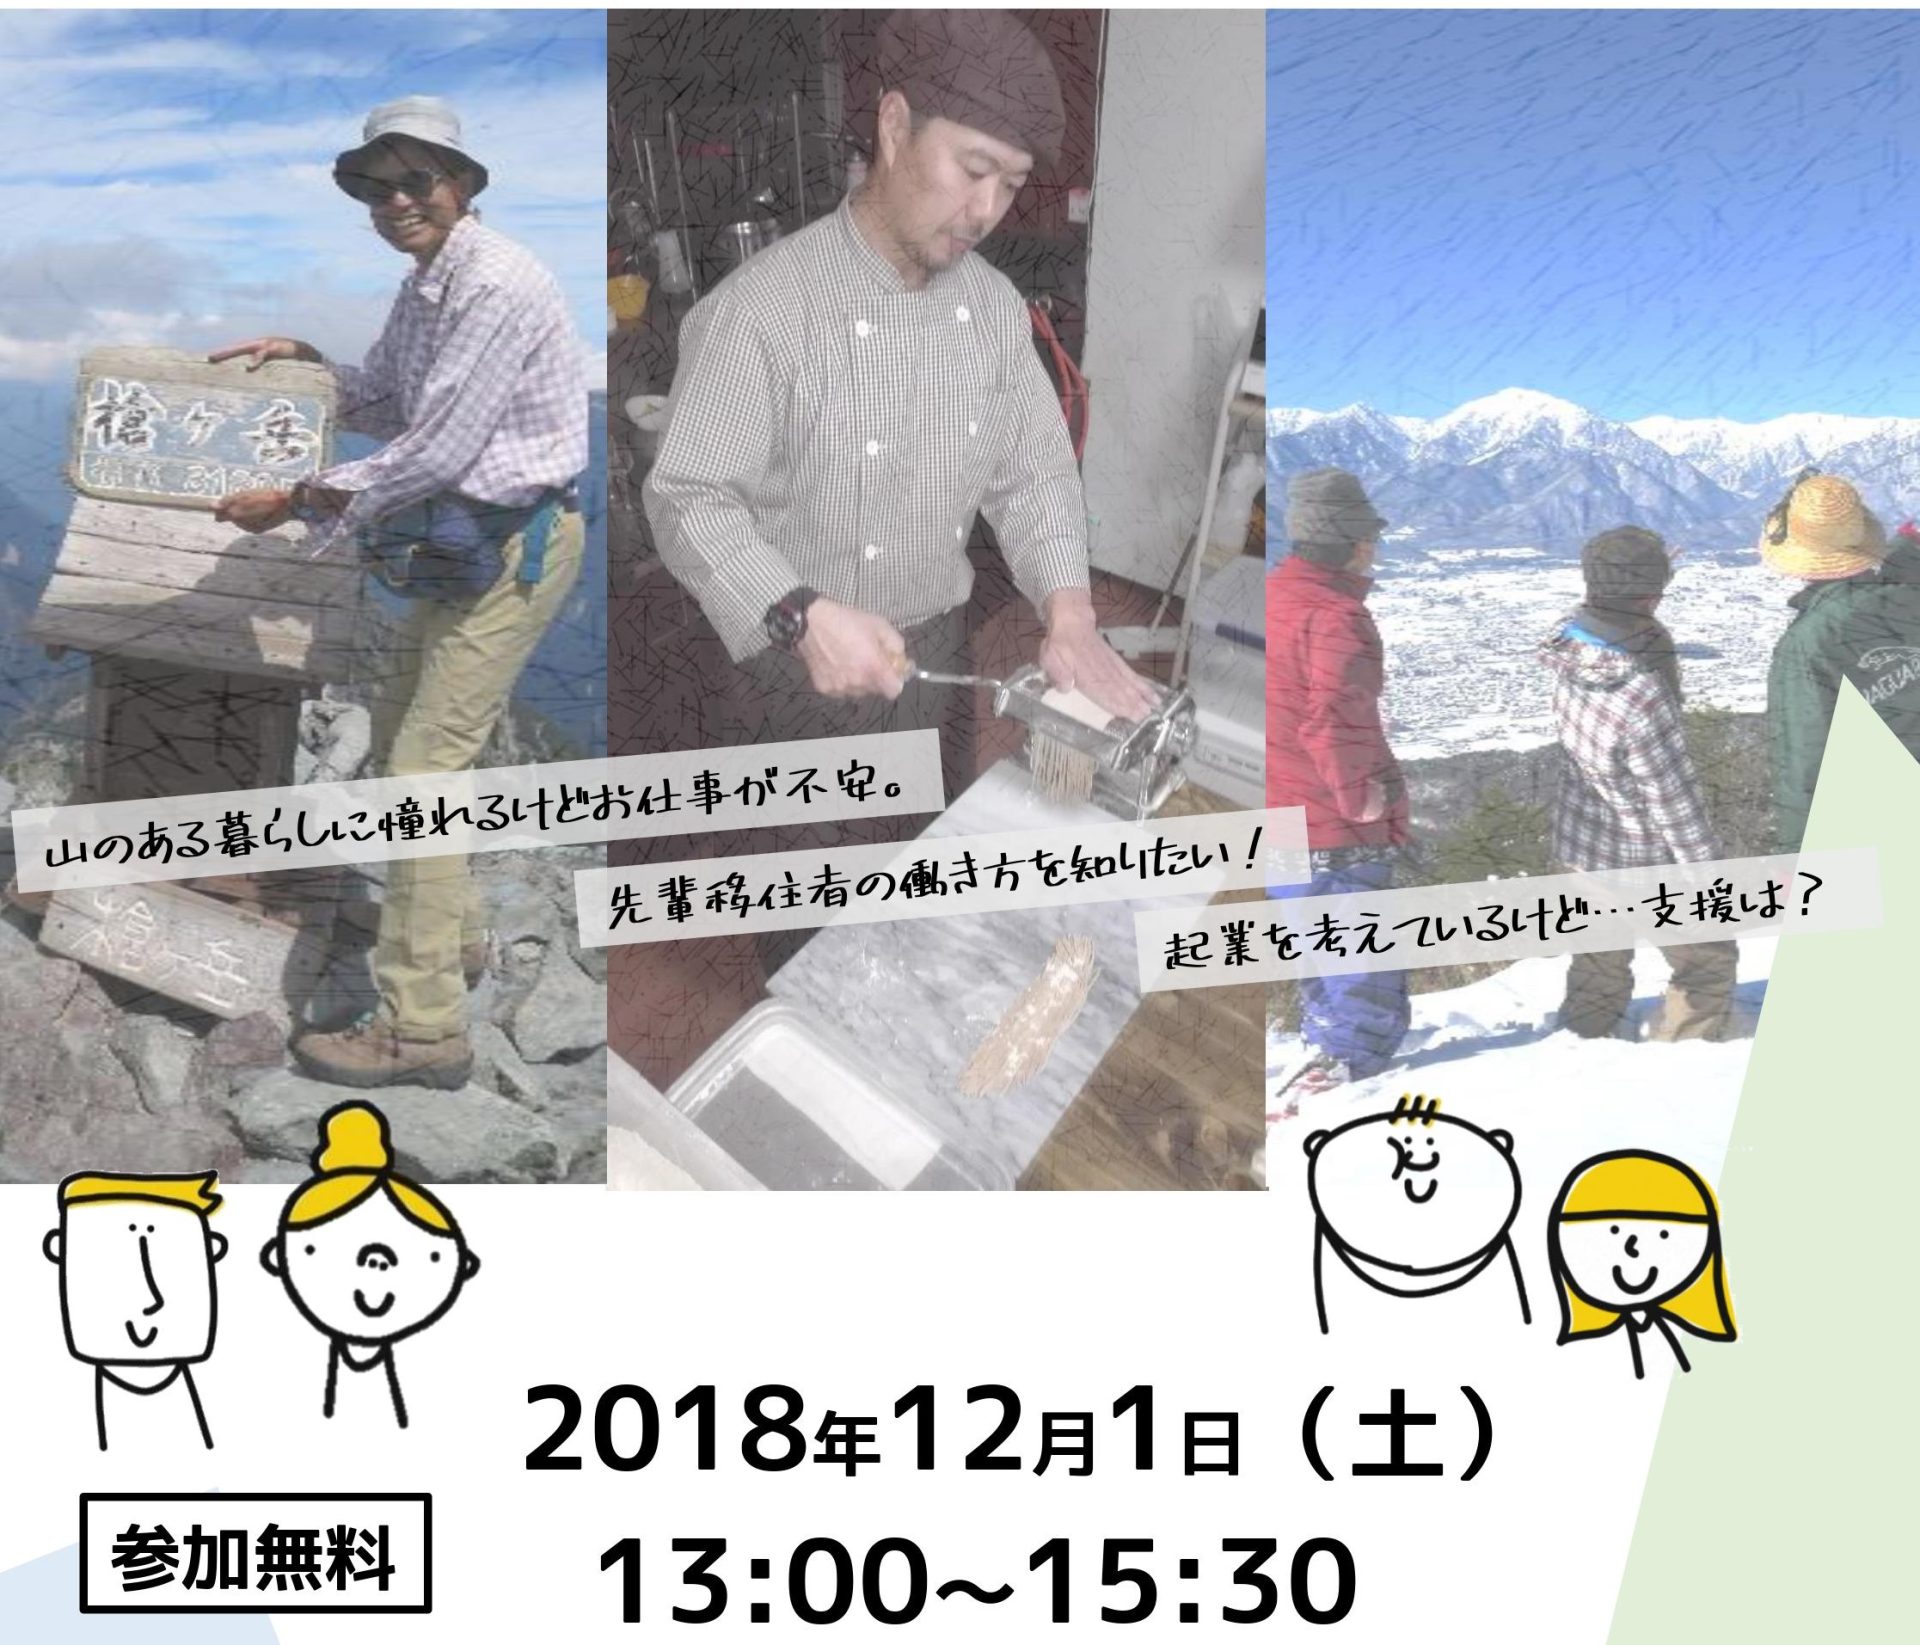 北アルプスの麓 長野県大町市での働き方を聞いてみよう！地域おこし協力隊の募集もあり！！ | 移住関連イベント情報